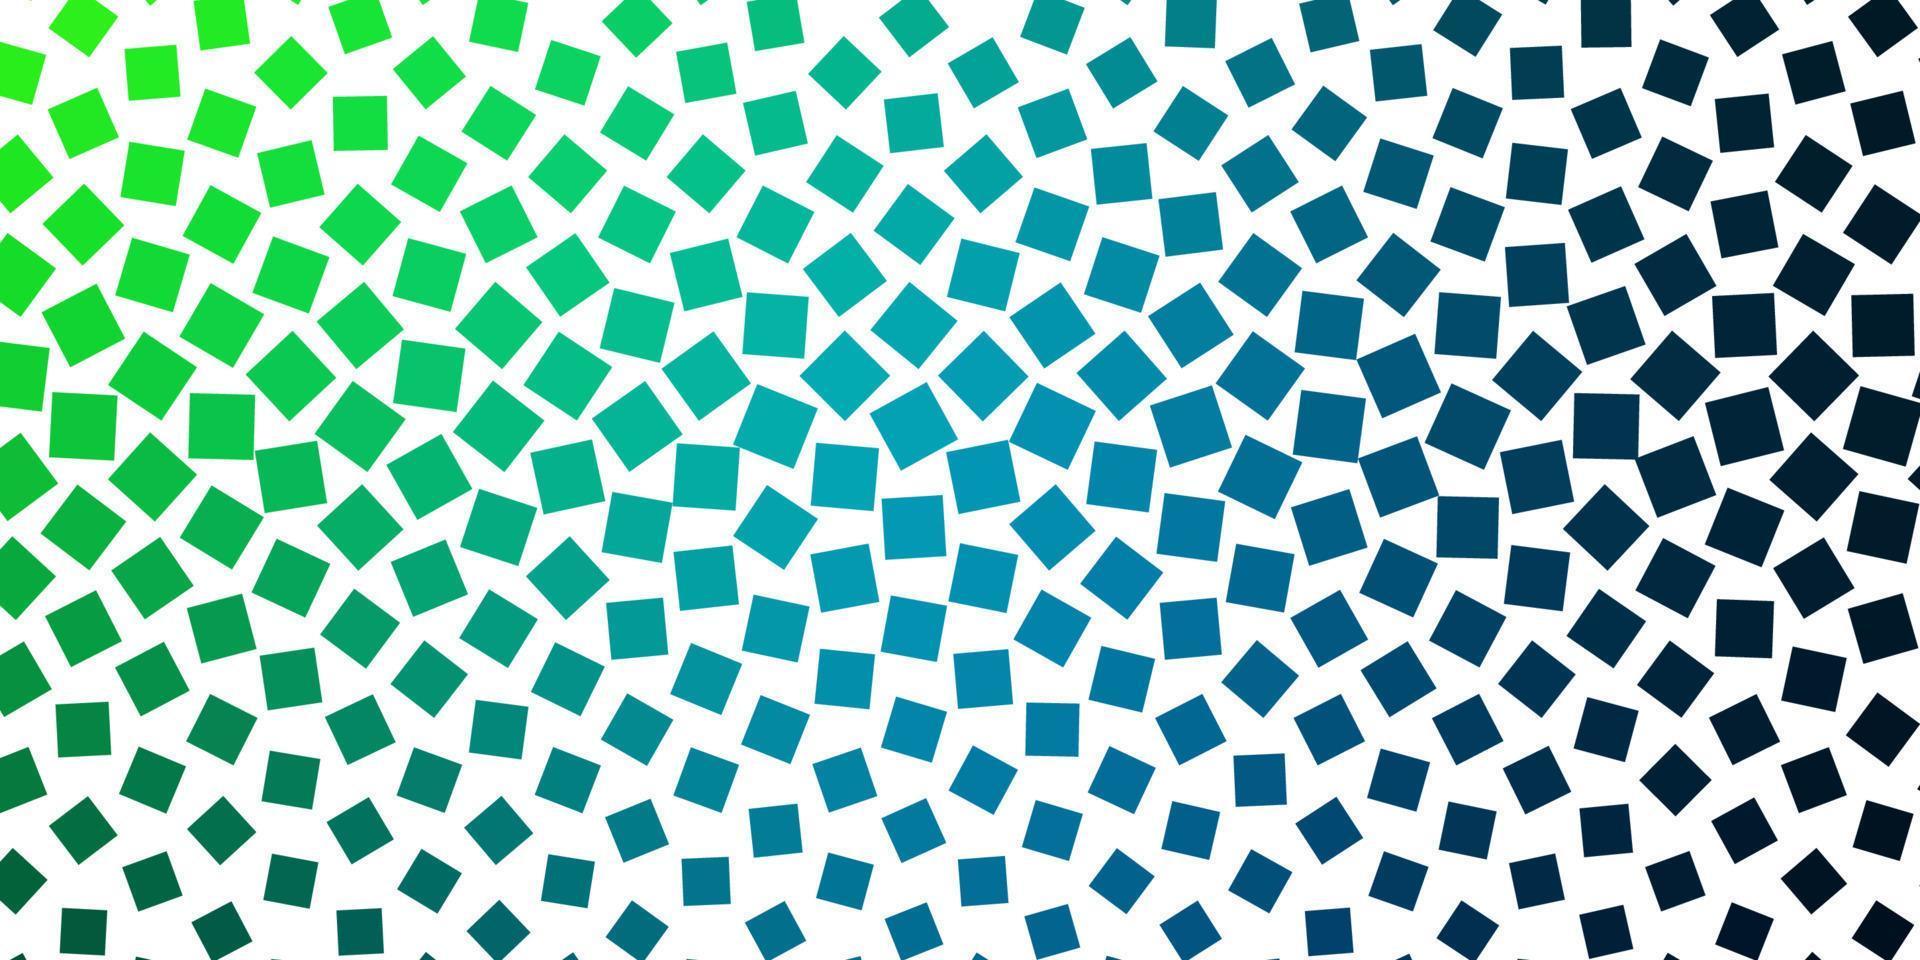 pano de fundo vector azul e verde claro com retângulos.